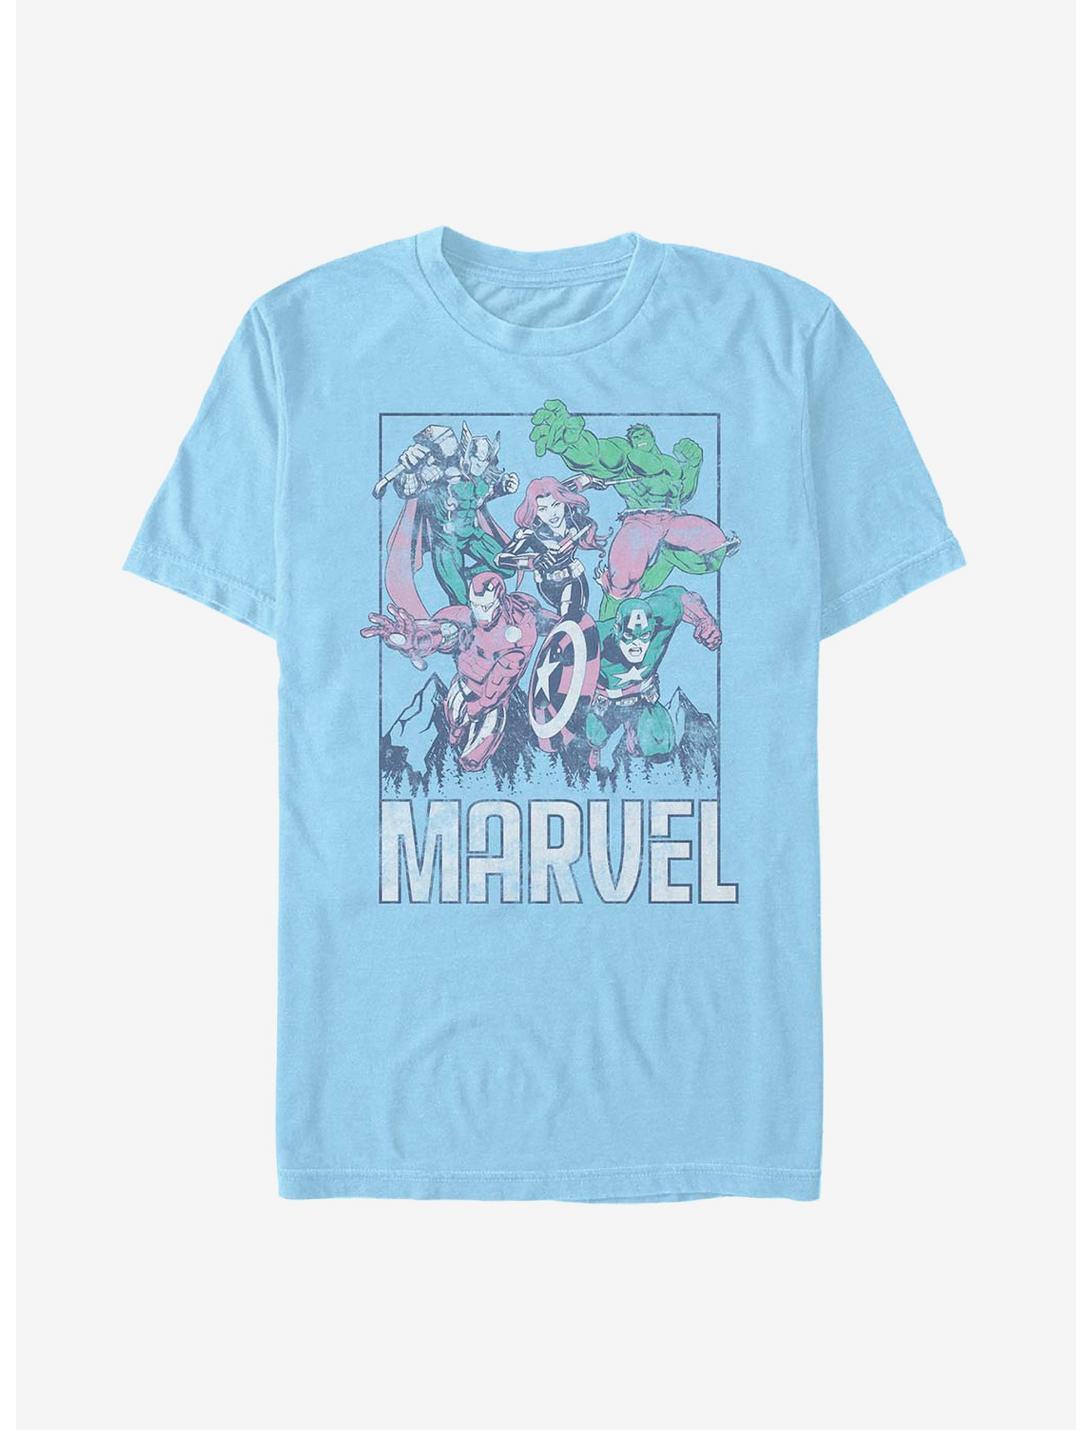 Marvel Avengers Marvel Avengers Group T-Shirt, LT BLUE, hi-res